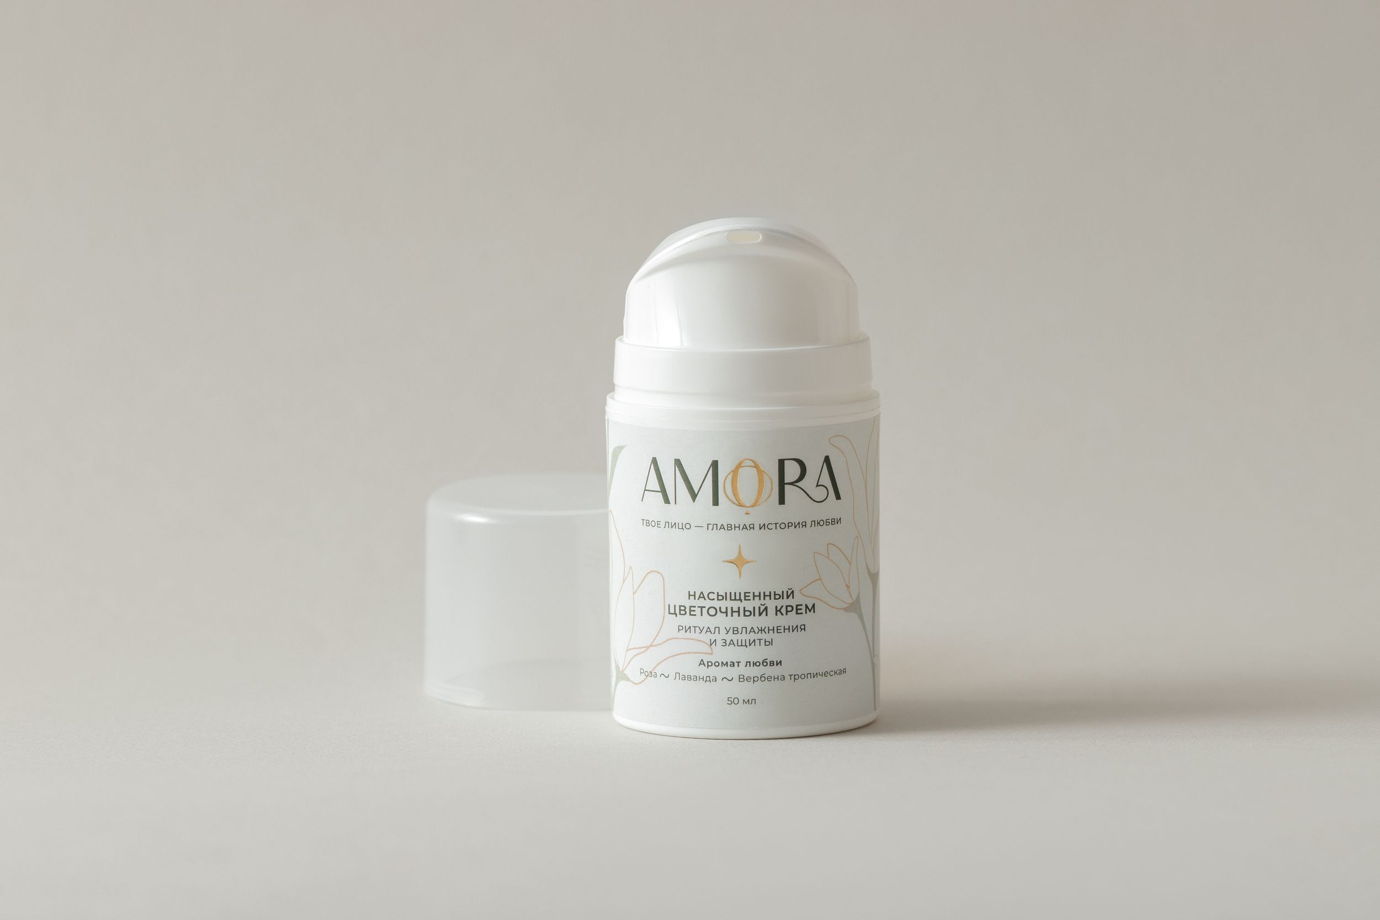 Набор базового ухода AMORA в подарочной упаковке (бальзам, крем, сыворотка)